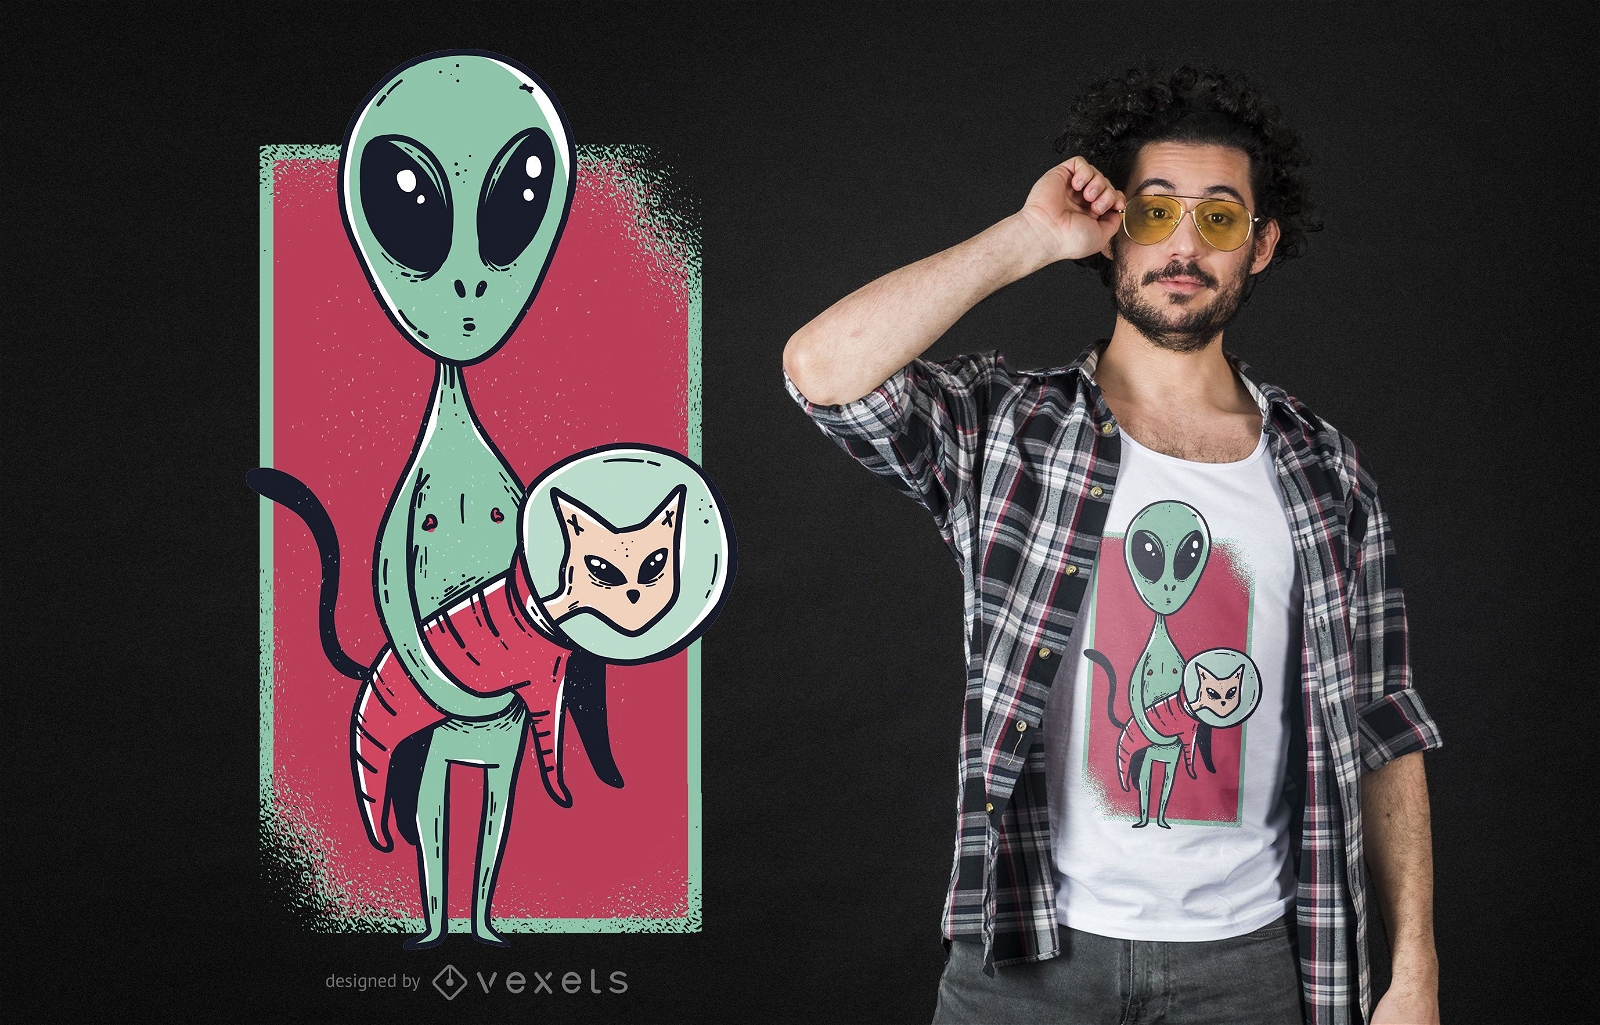 Dise?o de camiseta divertida del gato lindo alien?gena espacial